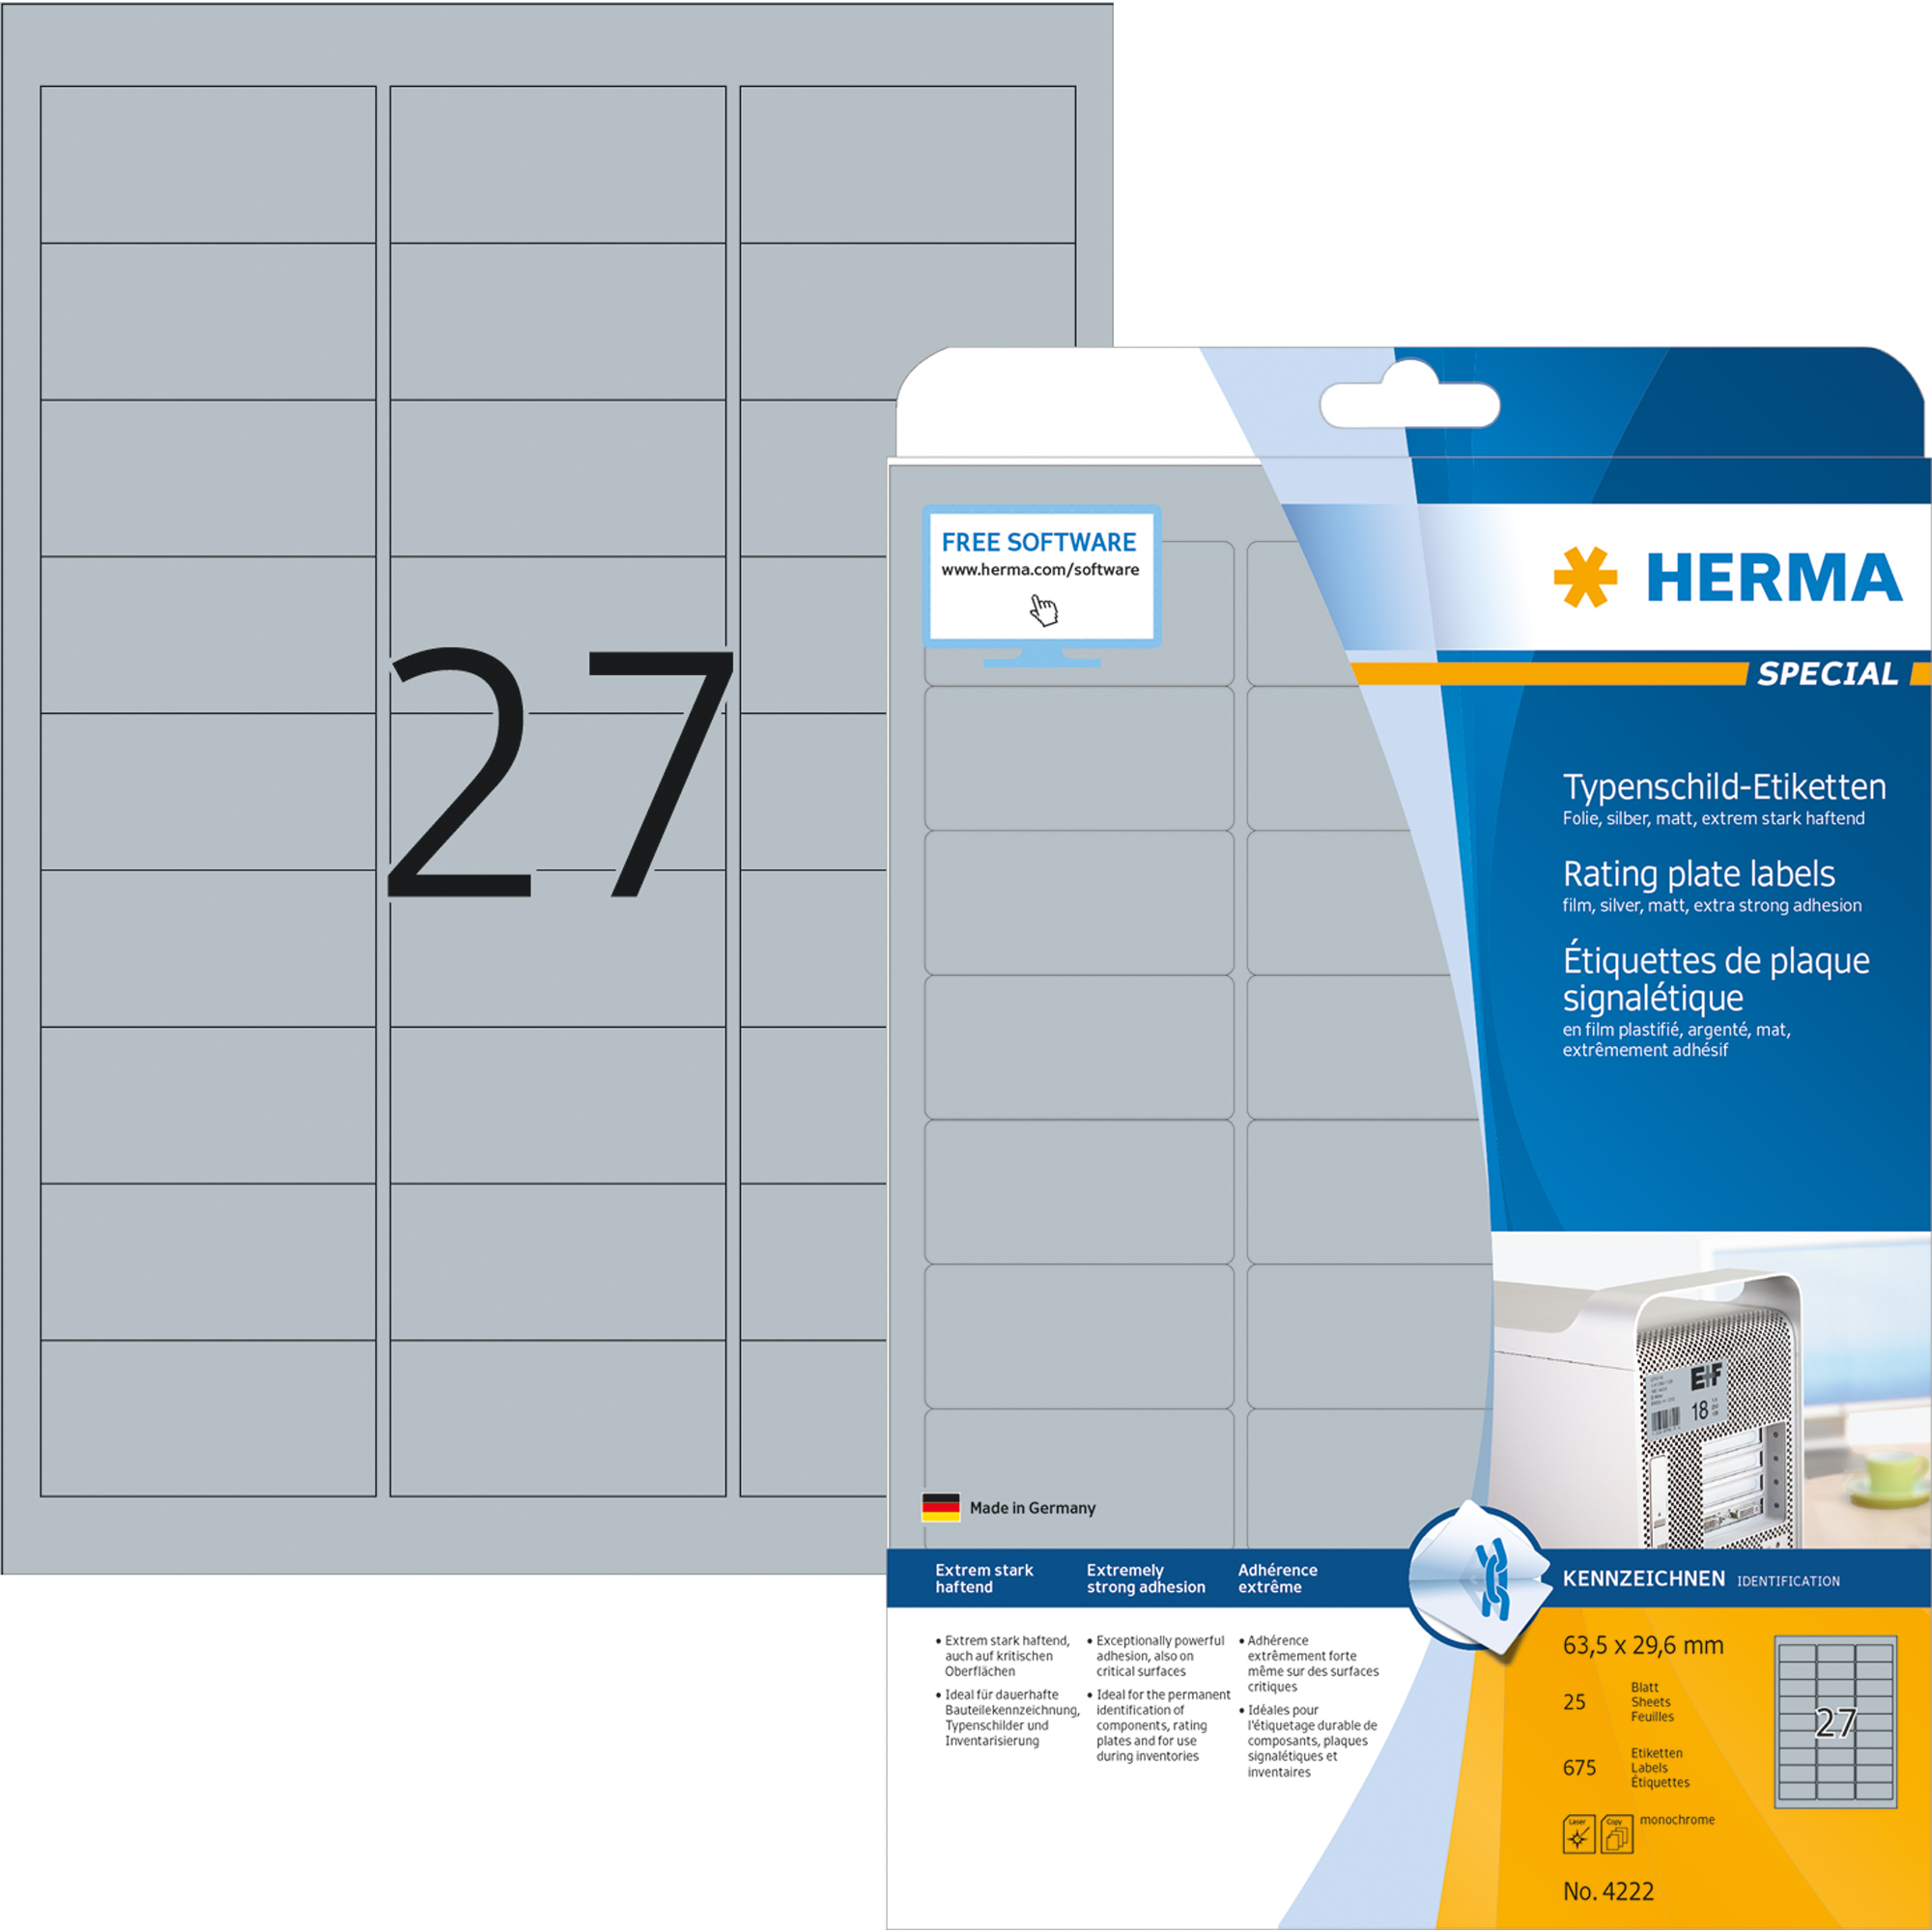 HERMA Typenschildetikett SPECIAL 63,5 x 29,6 mm 25 Bl./Pack.